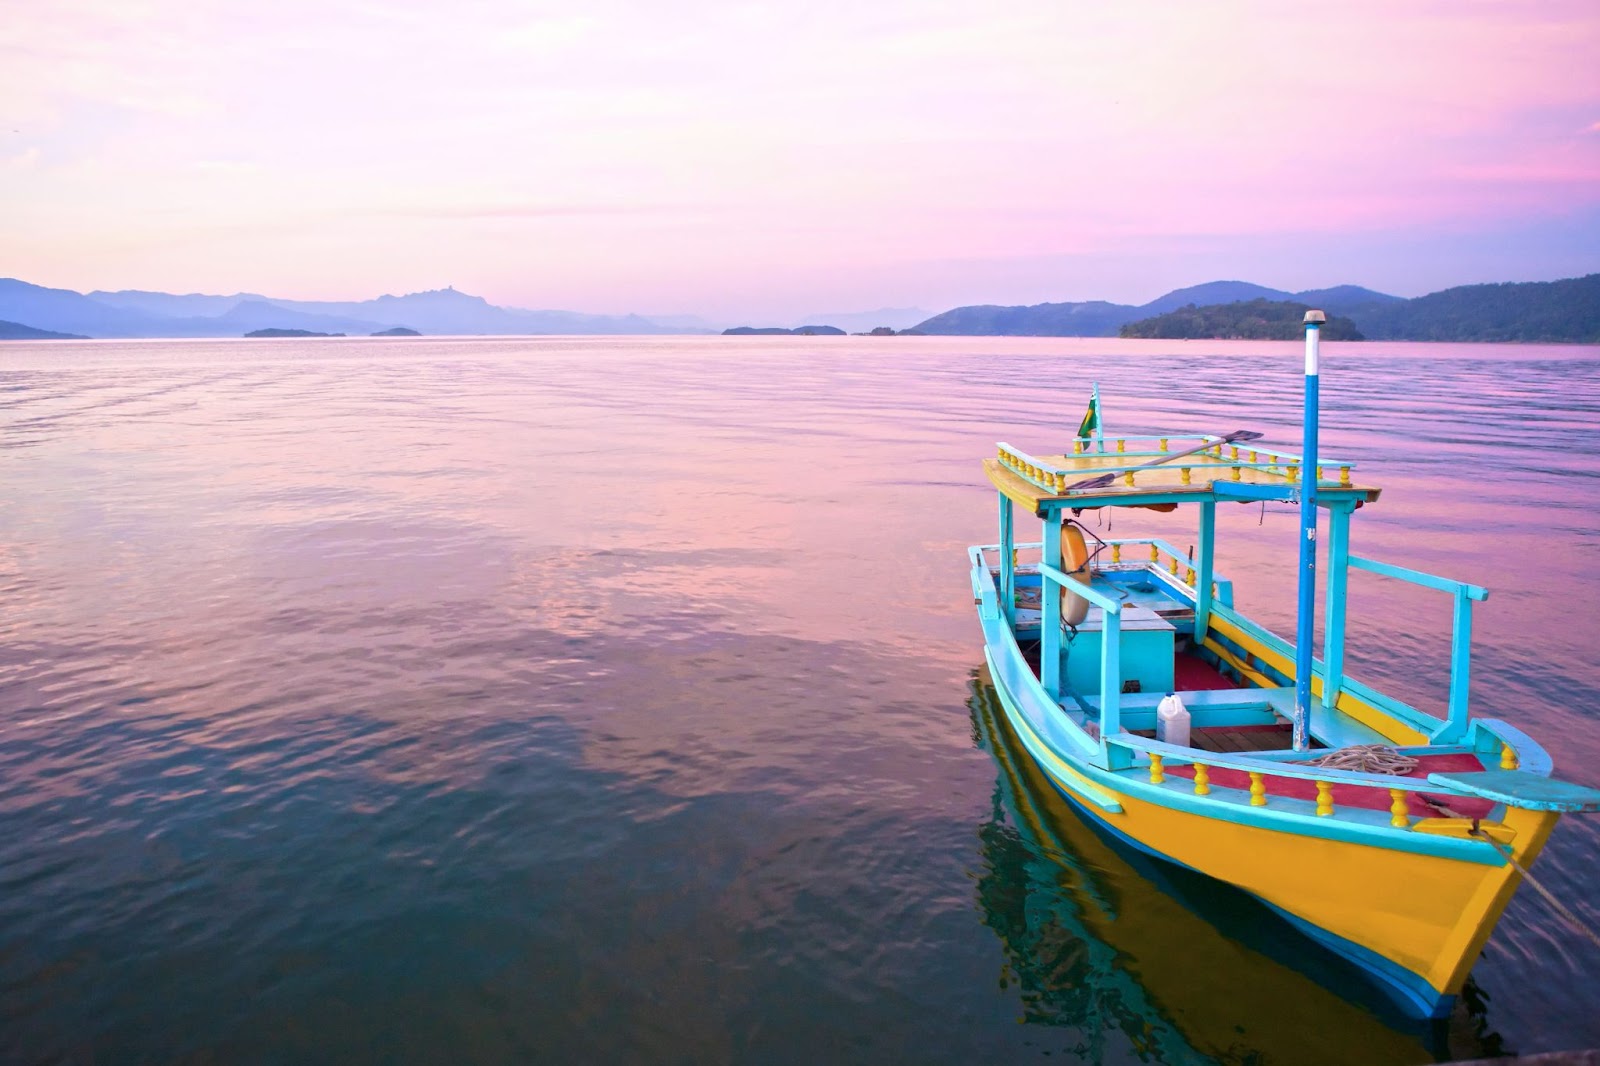 Barco amarelo e azul flutuando no mar sem ondas, em tom rosado refletindo o céu ao entardecer.